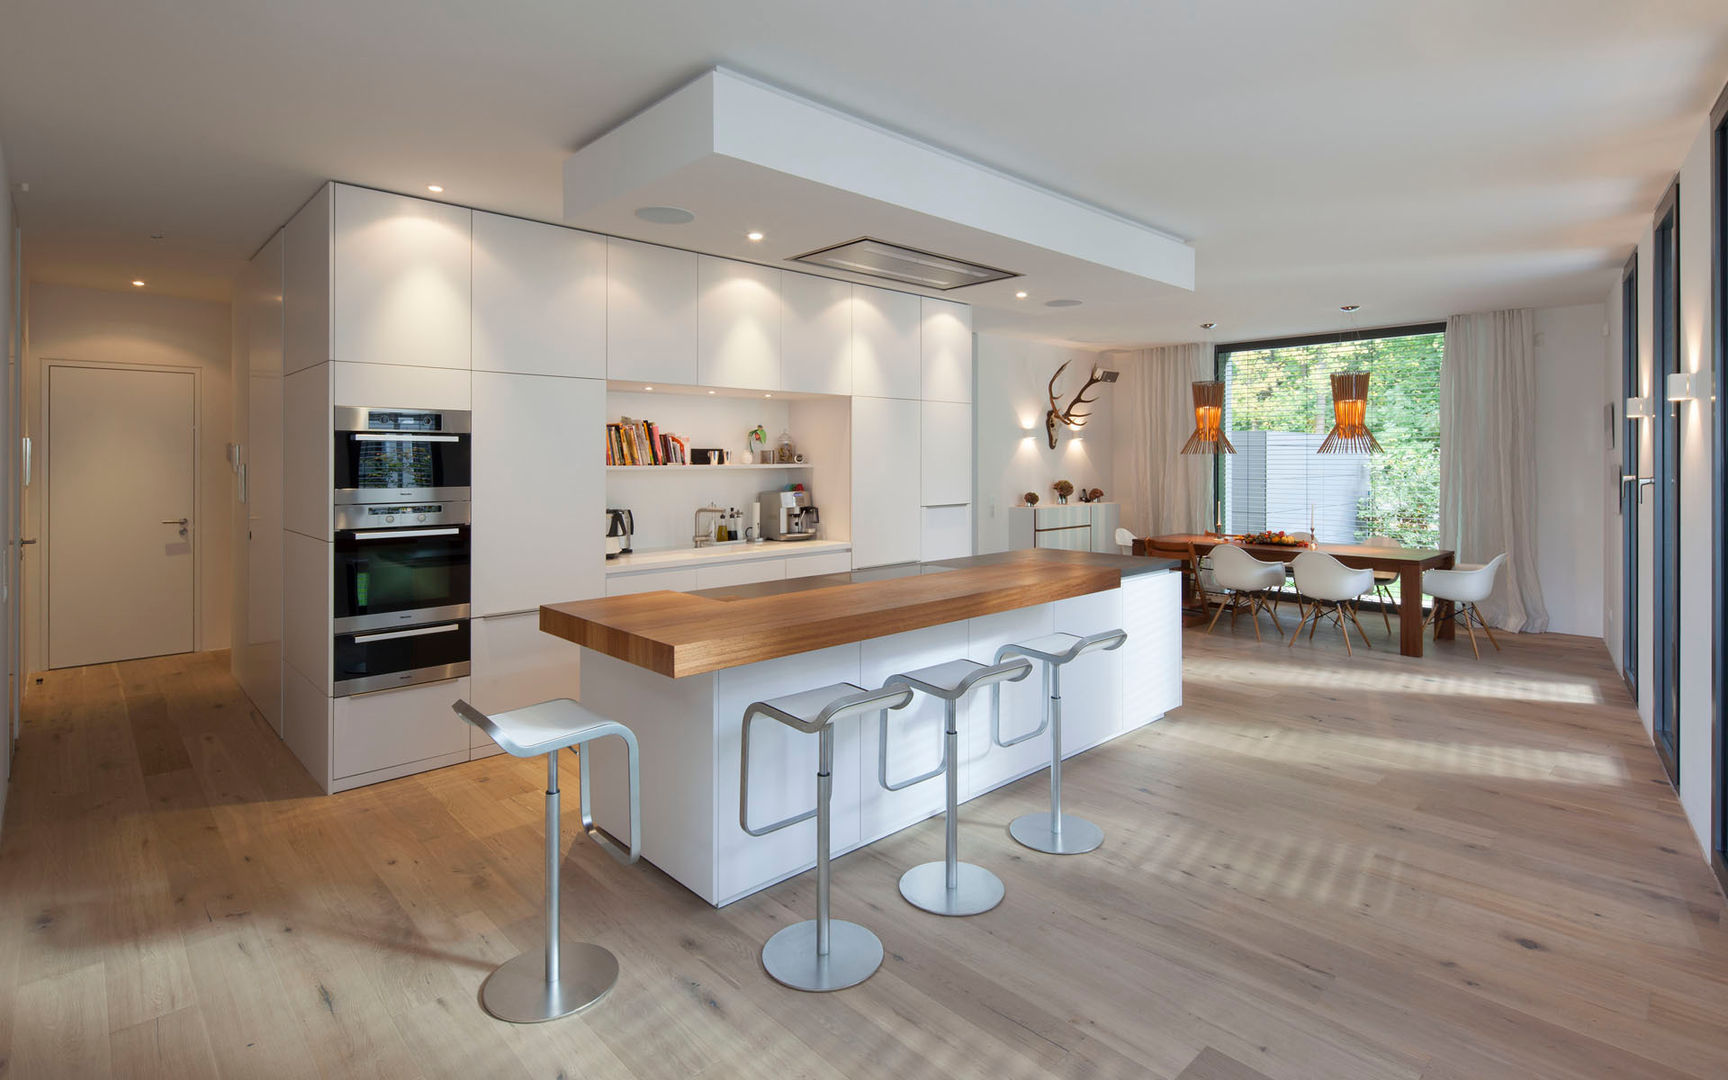 Küche S., rother küchenkonzepte + möbeldesign Gmbh rother küchenkonzepte + möbeldesign Gmbh ห้องครัว